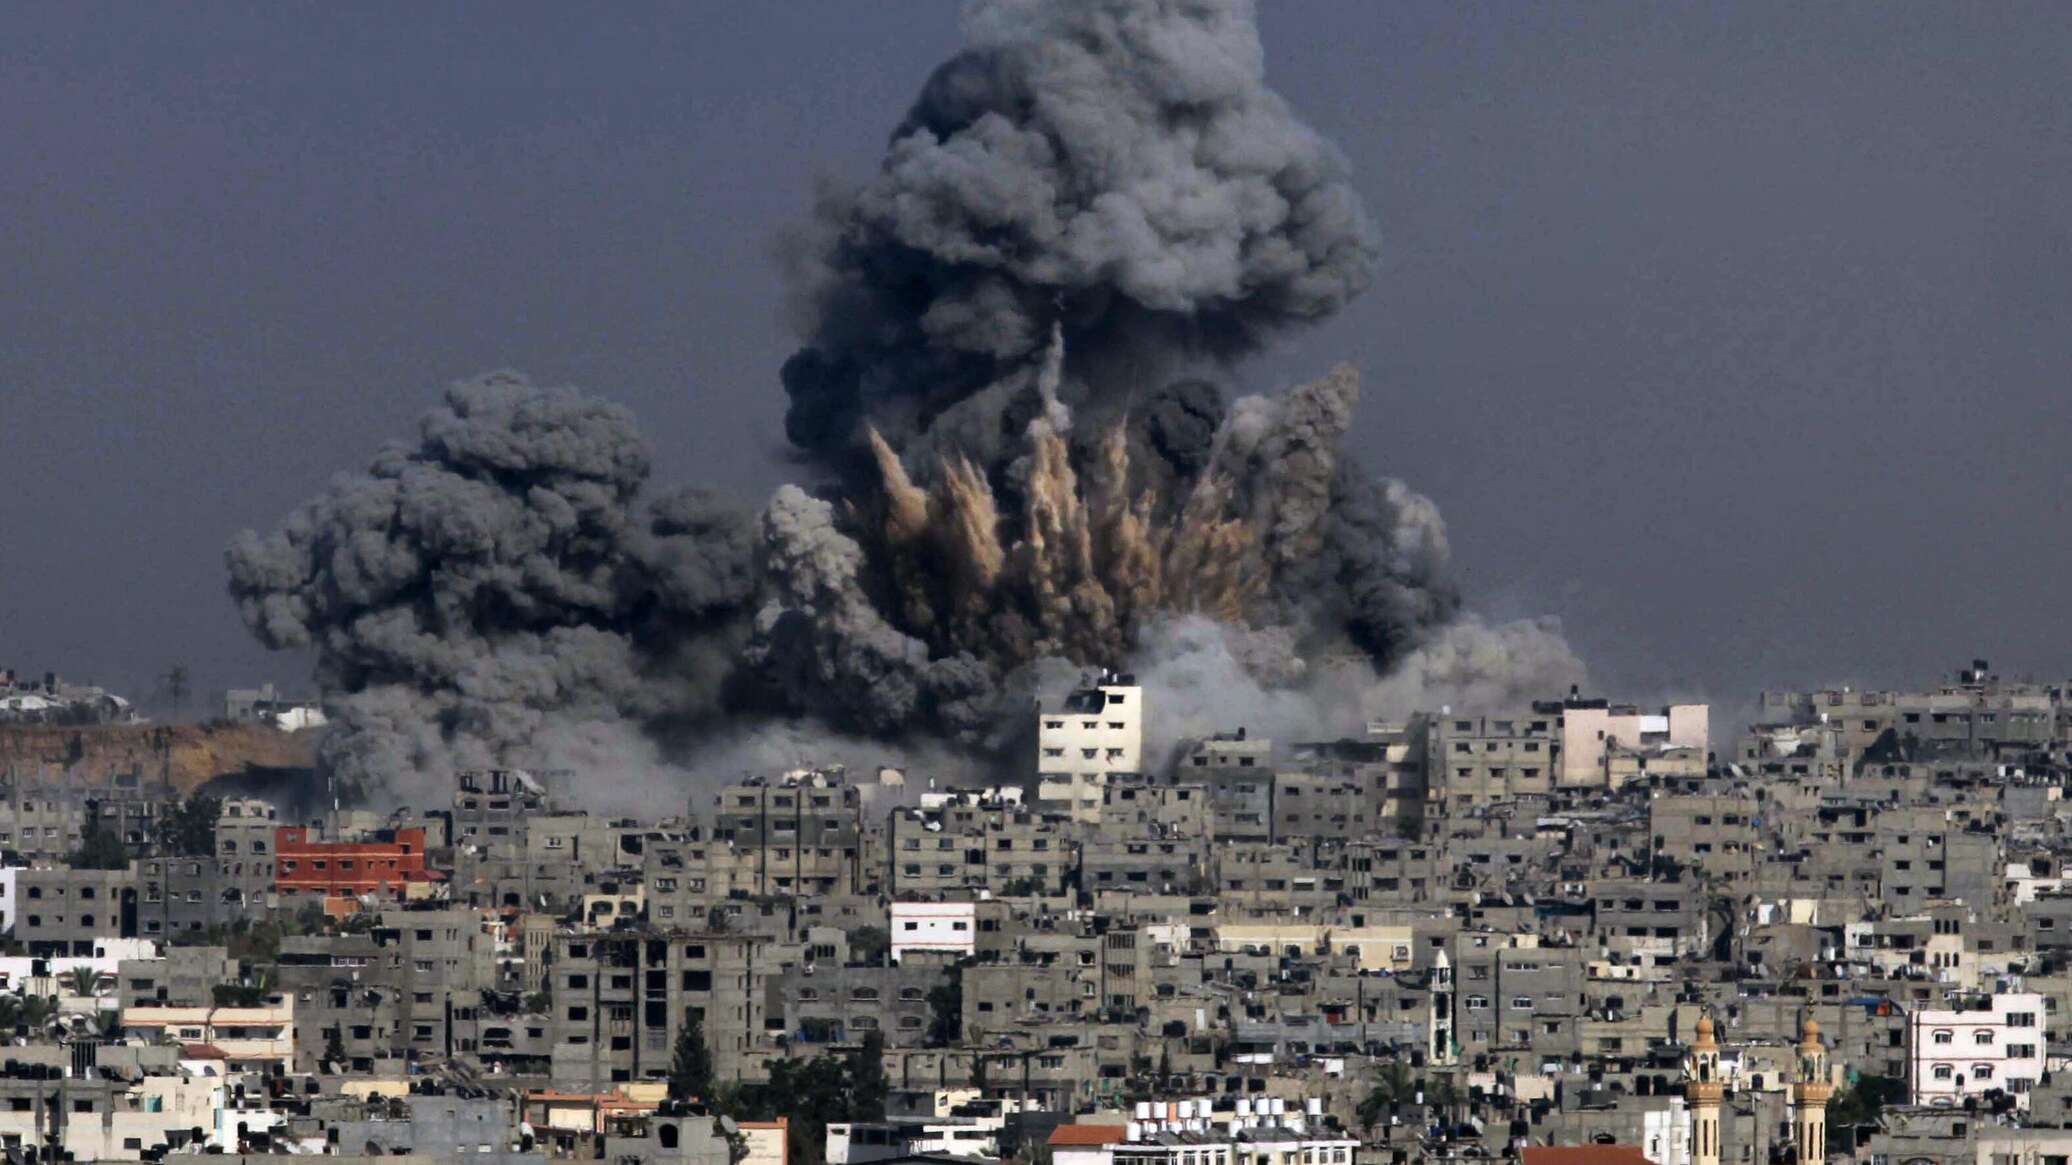 إسرائيل تعلن تصفية نائب قائد المخابرات في "حماس" بضربة جوية... فيديو